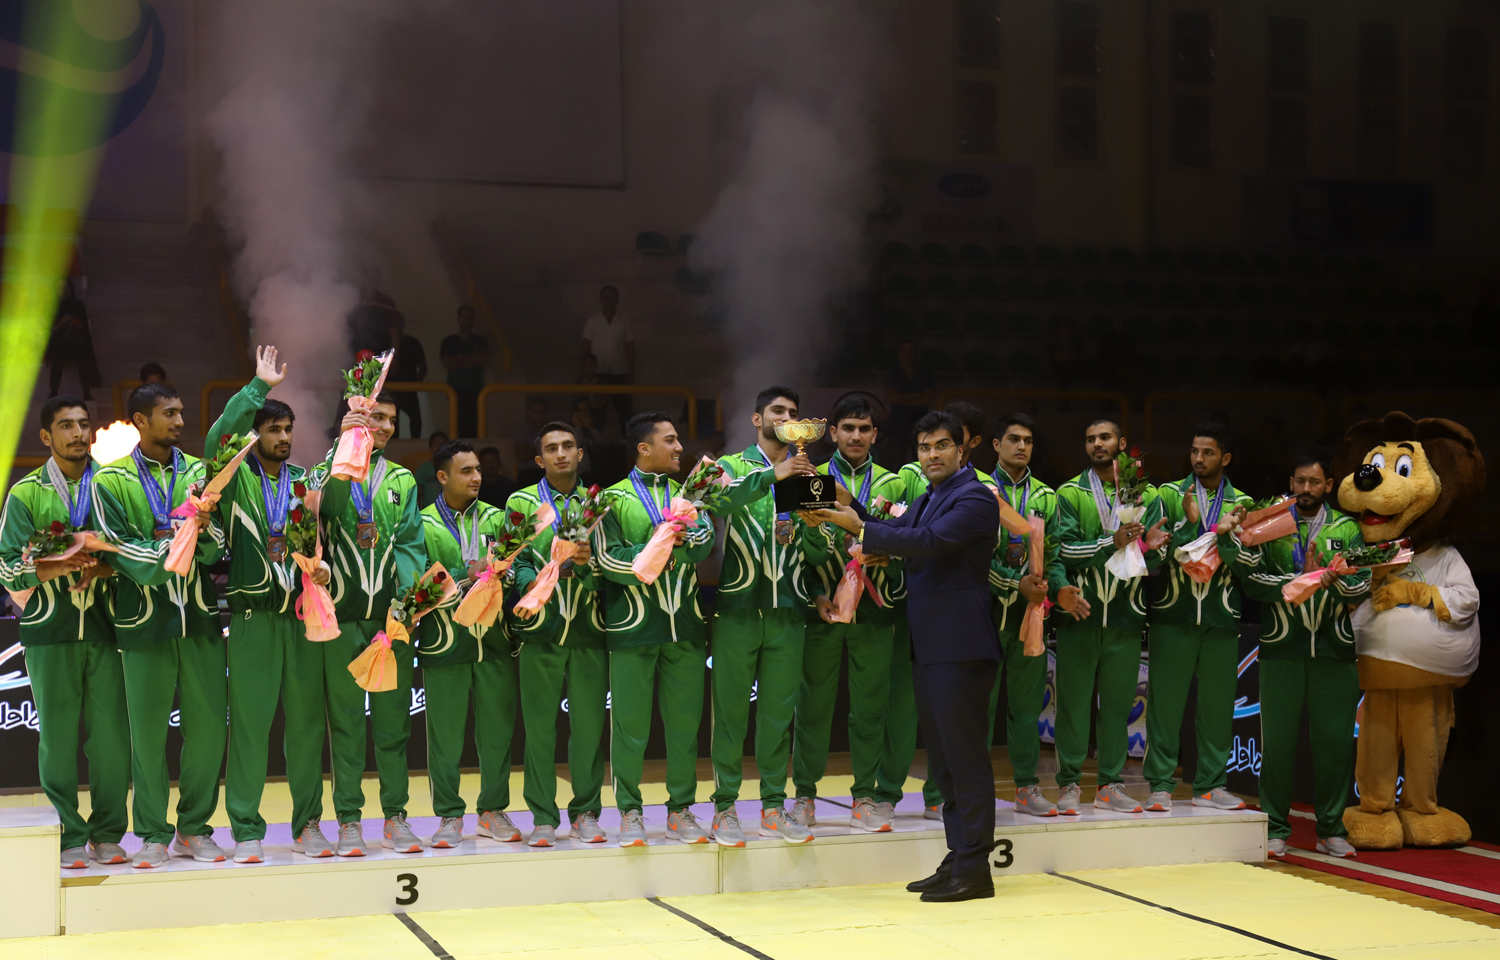 دکتر امیری خراسانی: کیش میزبانی شایسته در اولین دوره مسابقات کبدی قهرمانی جوانان جهان